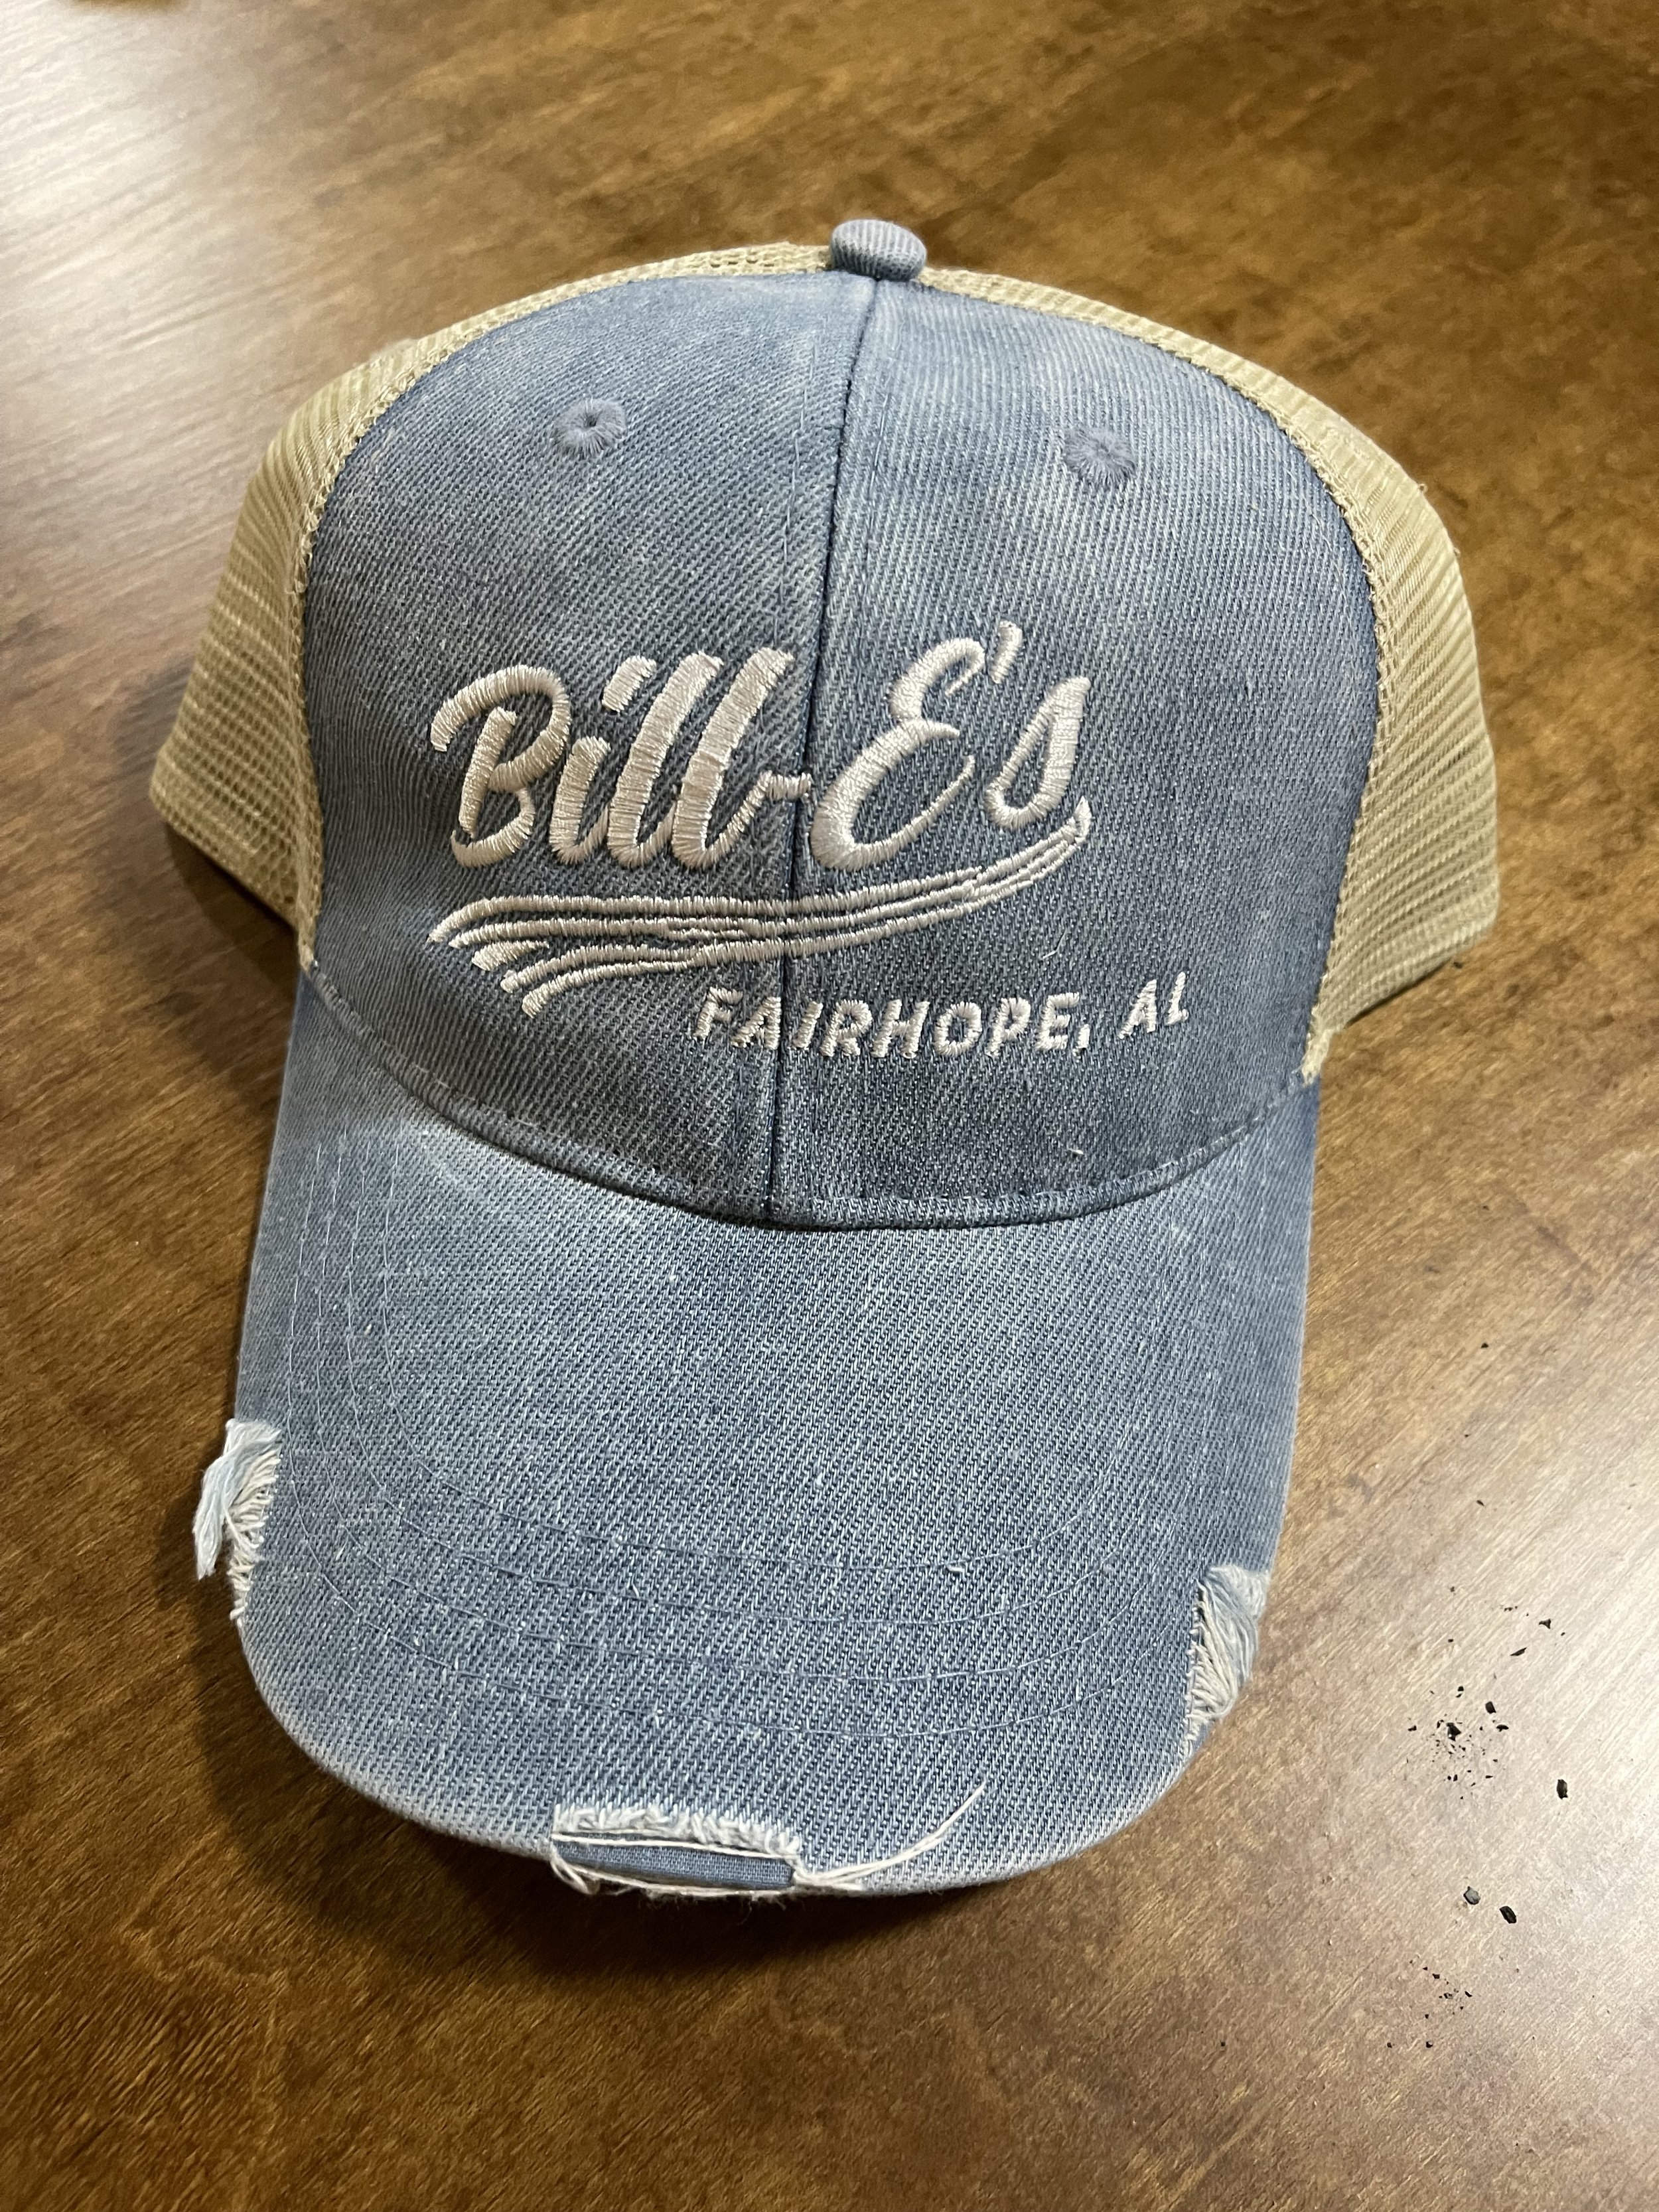 BILL-E's HAT — Bill-E's Small Batch Bacon